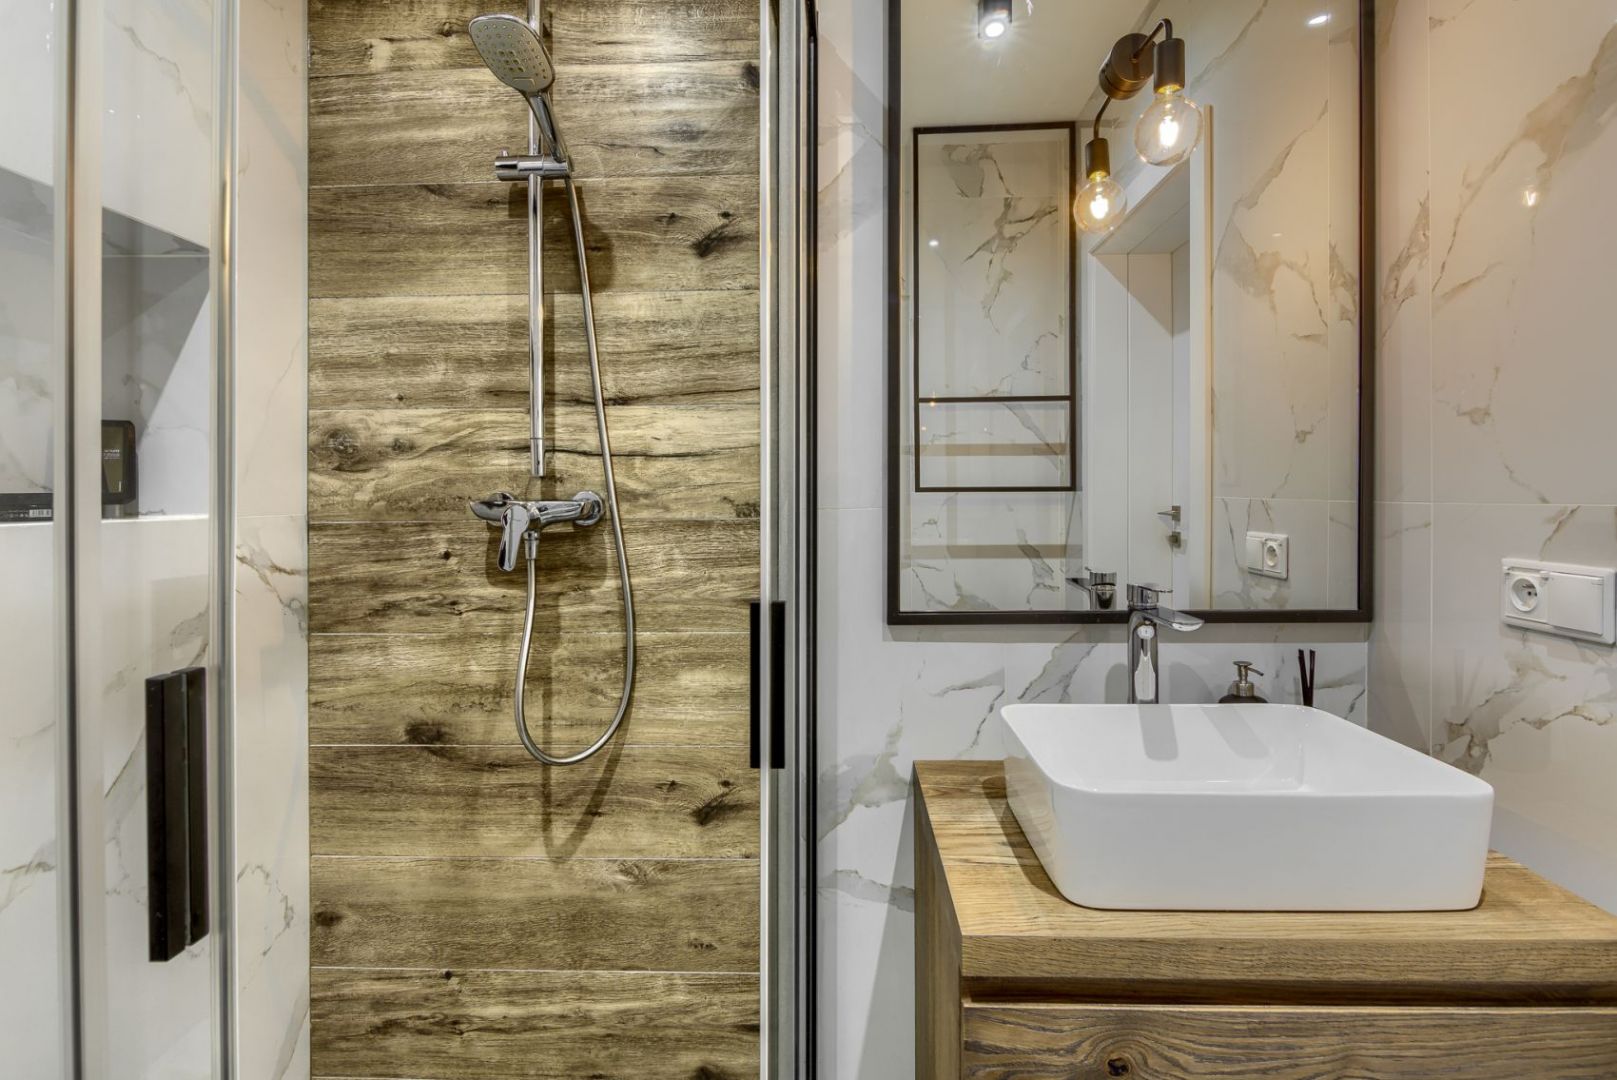 W łazience z prysznicem króluje biały marmur i drewno. Projekt: Magda Subda, studio Marta Subda Design. Fot. Krzysztof Sądej